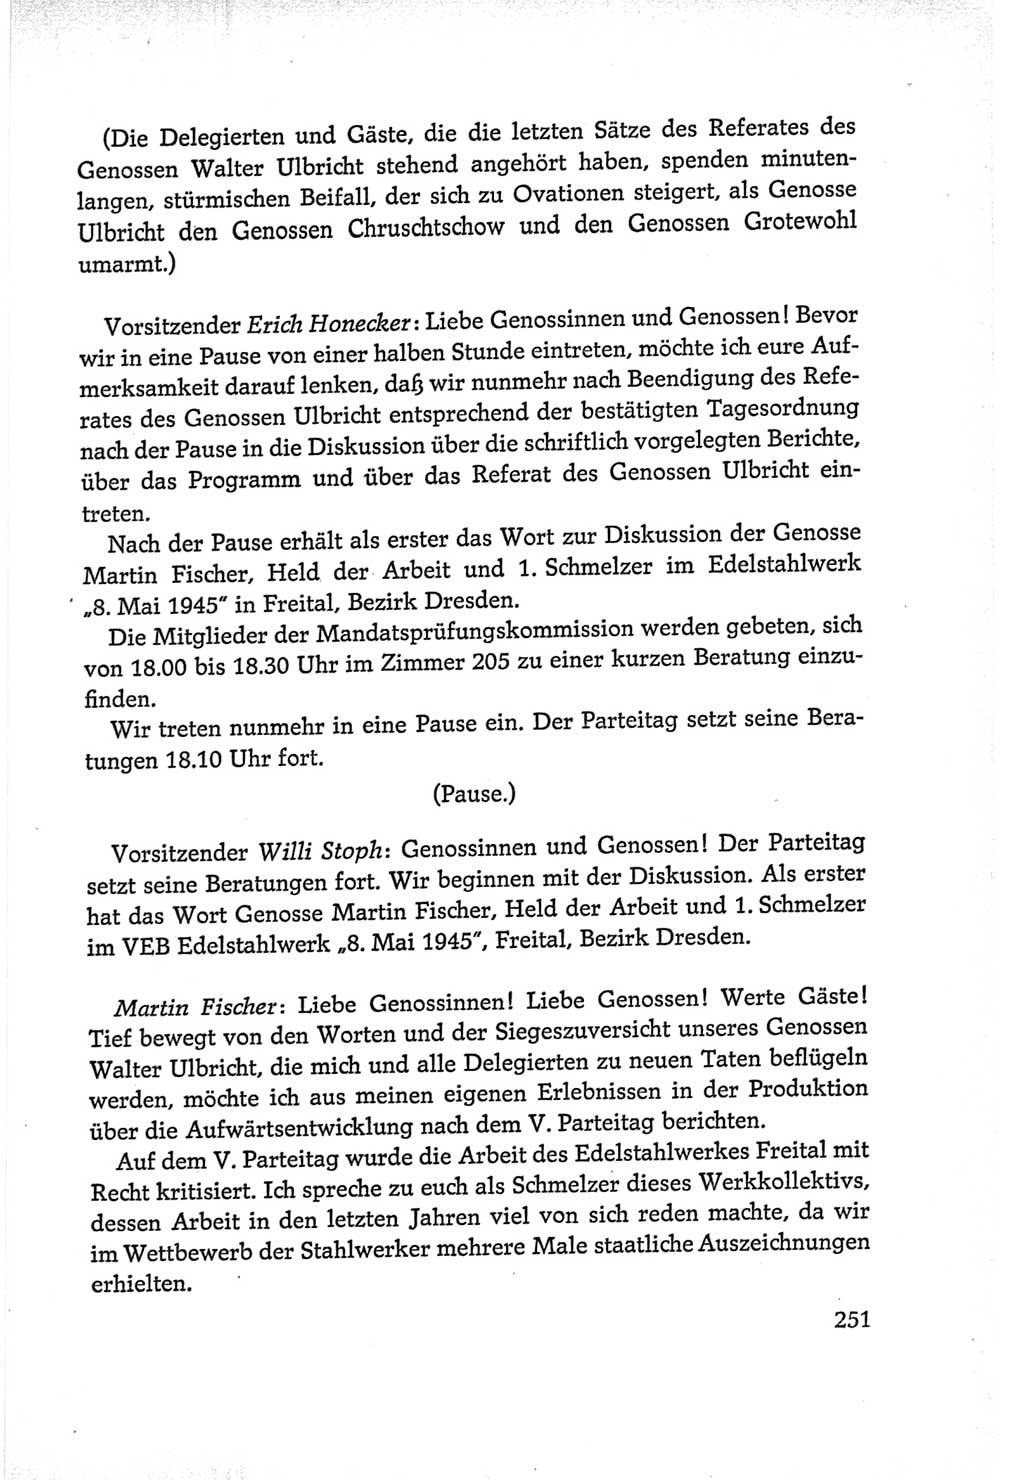 Protokoll der Verhandlungen des Ⅵ. Parteitages der Sozialistischen Einheitspartei Deutschlands (SED) [Deutsche Demokratische Republik (DDR)] 1963, Band Ⅰ, Seite 251 (Prot. Verh. Ⅵ. PT SED DDR 1963, Bd. Ⅰ, S. 251)